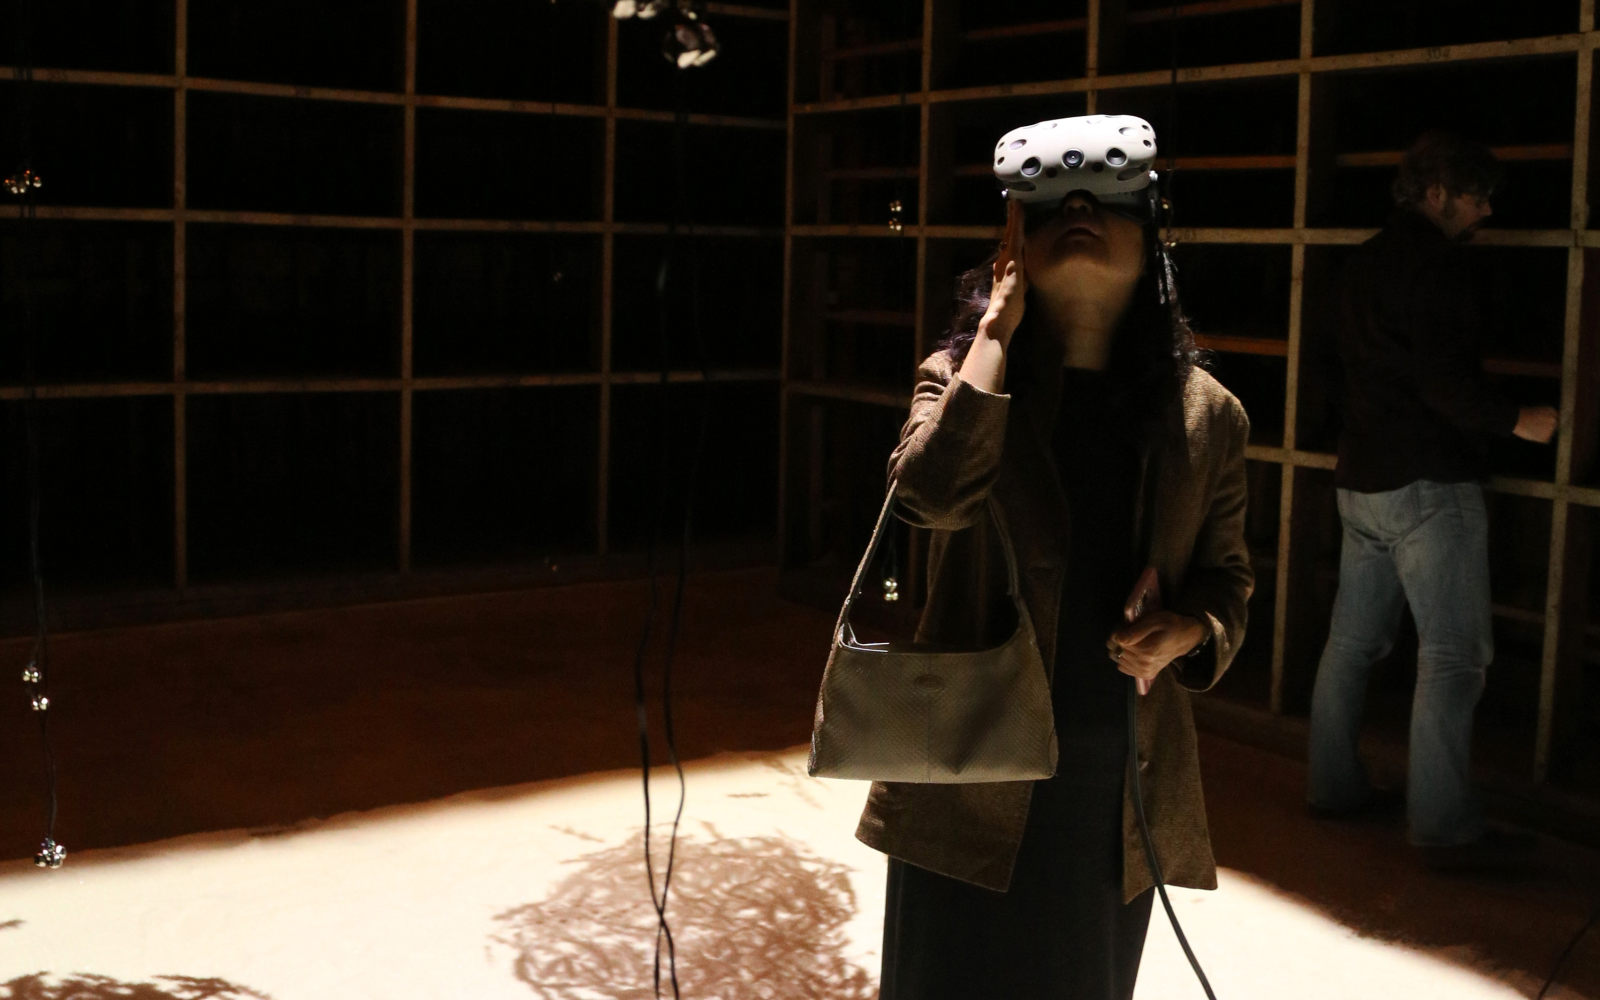 Eine Besucherin in einem abgedunkelten Raum schaut durch eine VR-Brille an die Decke.